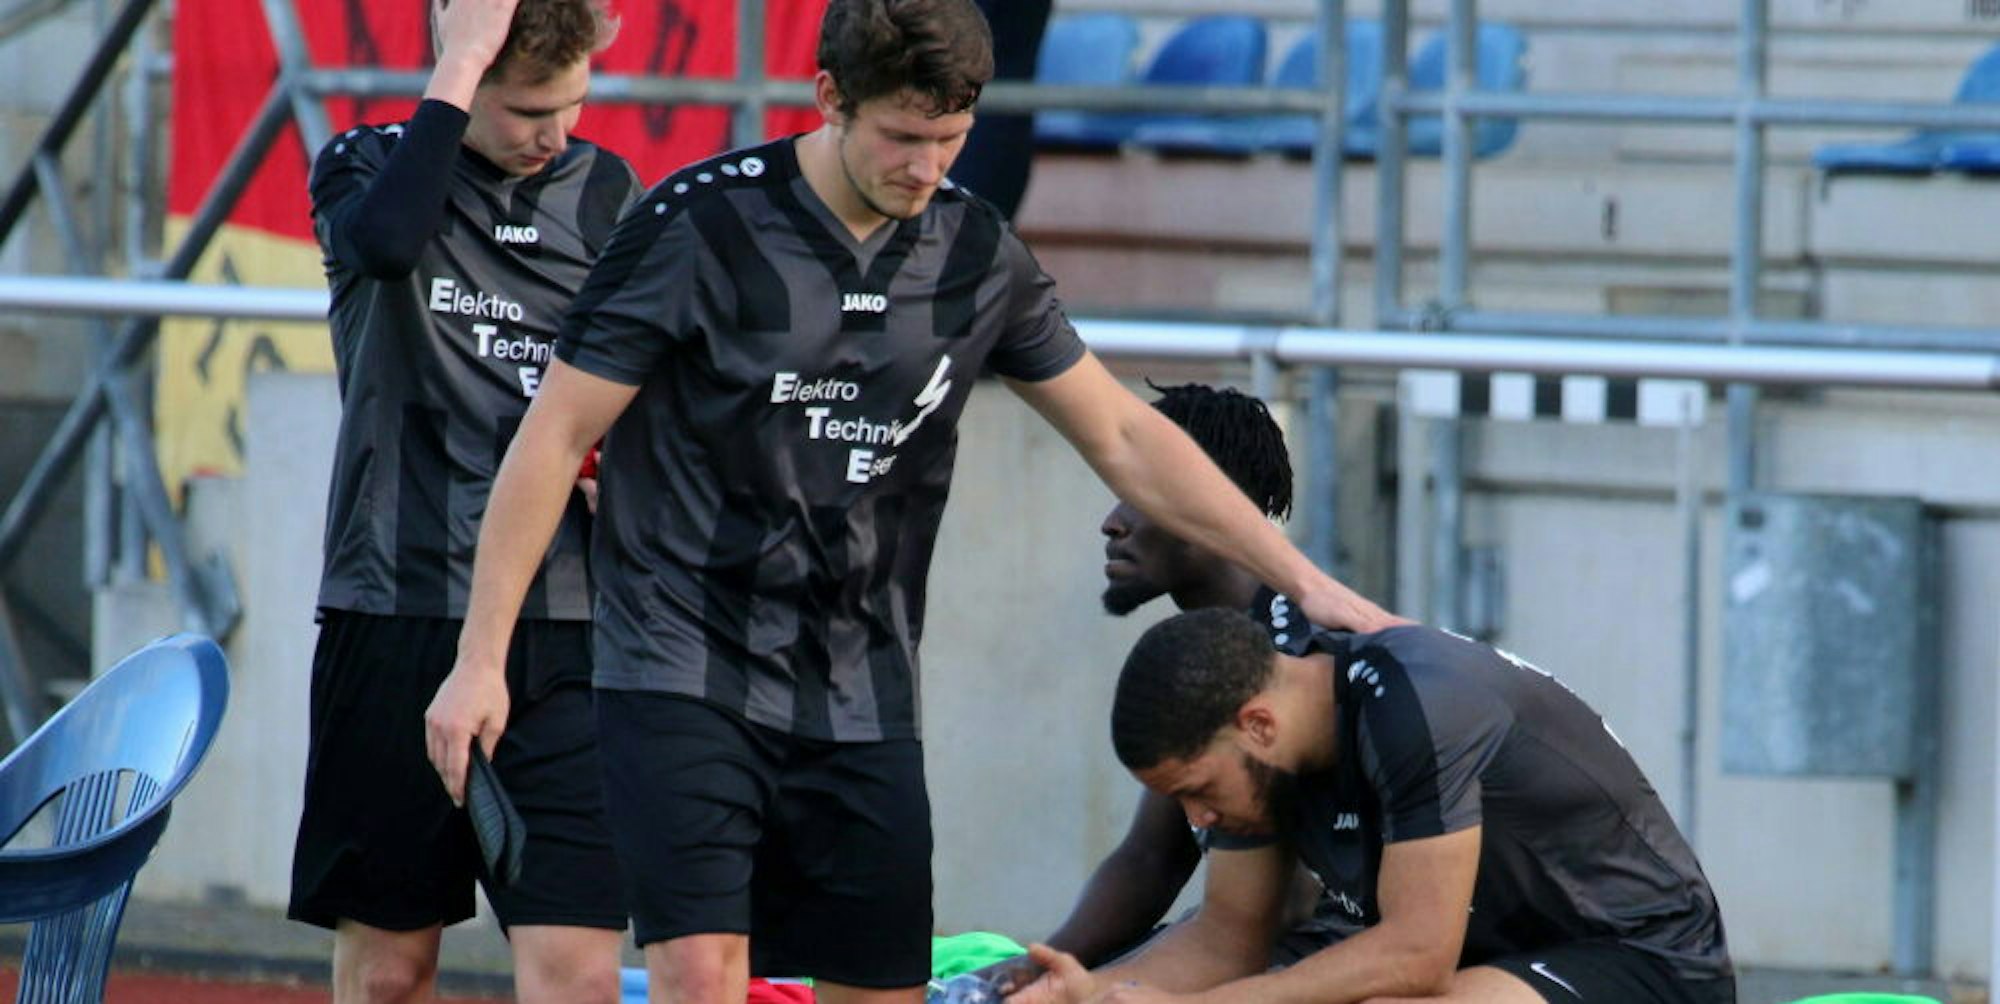 Betroffenheit herrschte bereits nach der Niederlage gegen Eilendorf. Sandro Braun tröstet Thomas Tamale.